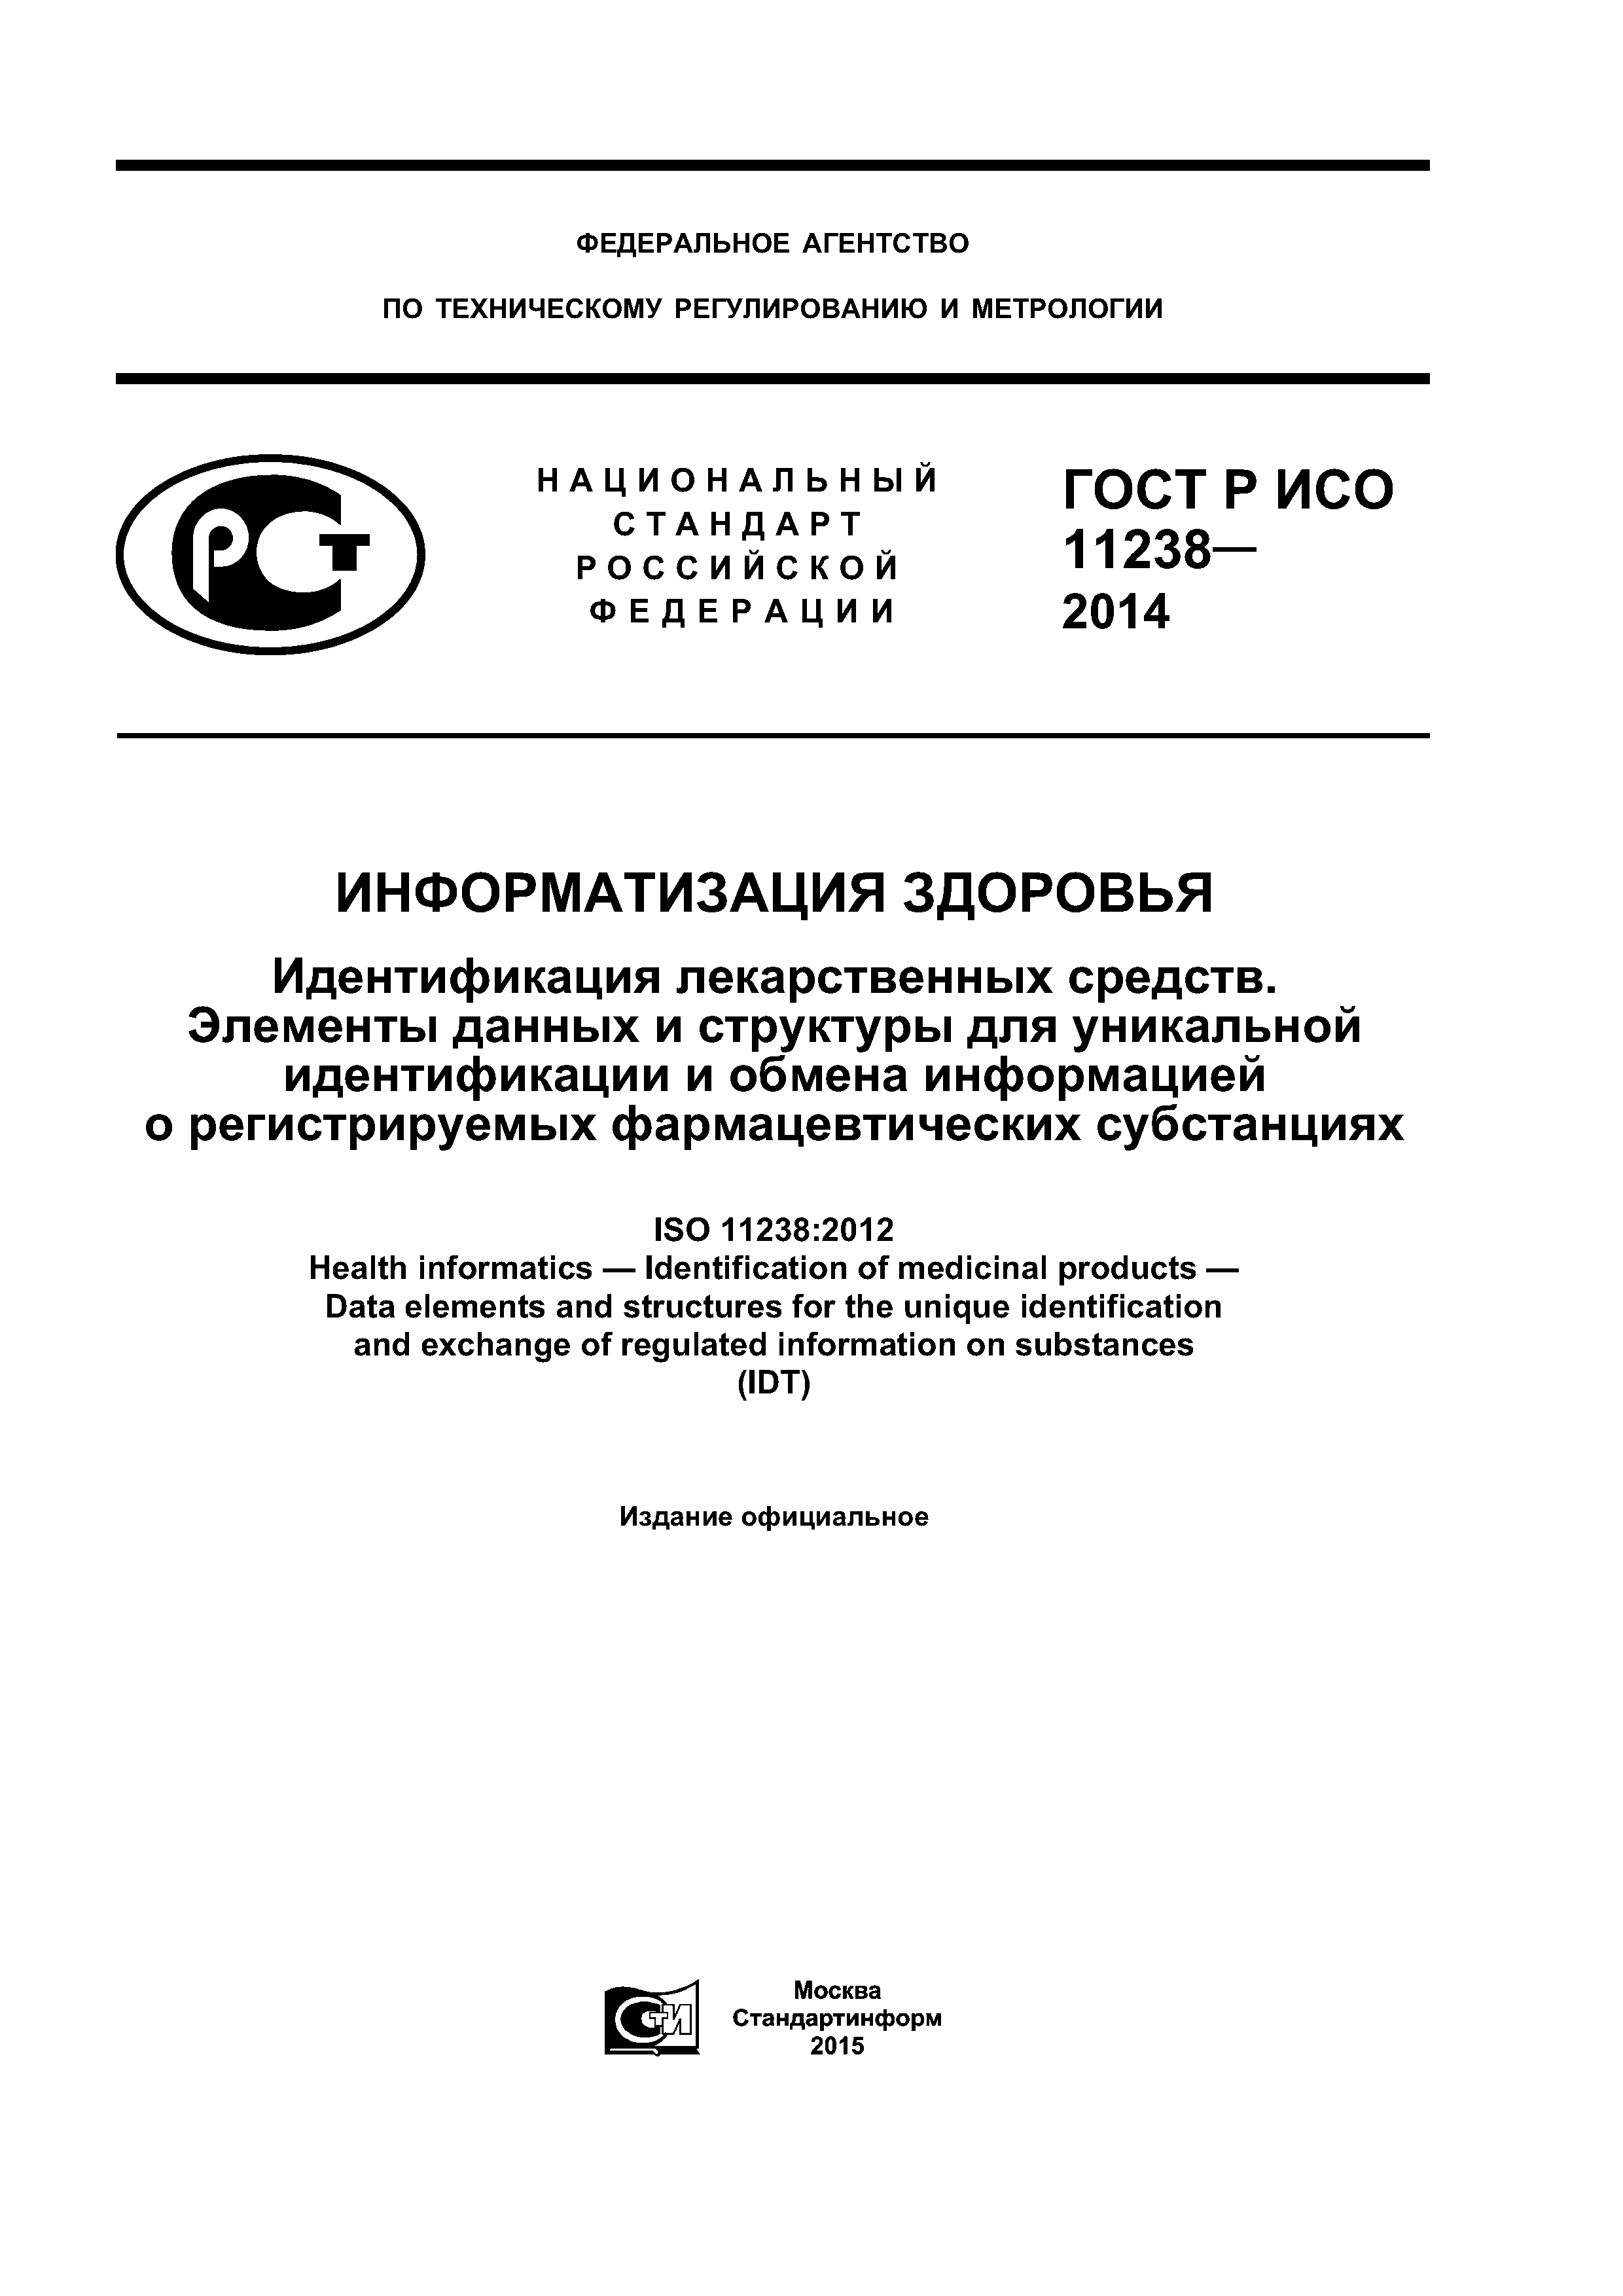 ГОСТ Р ИСО 11238-2014